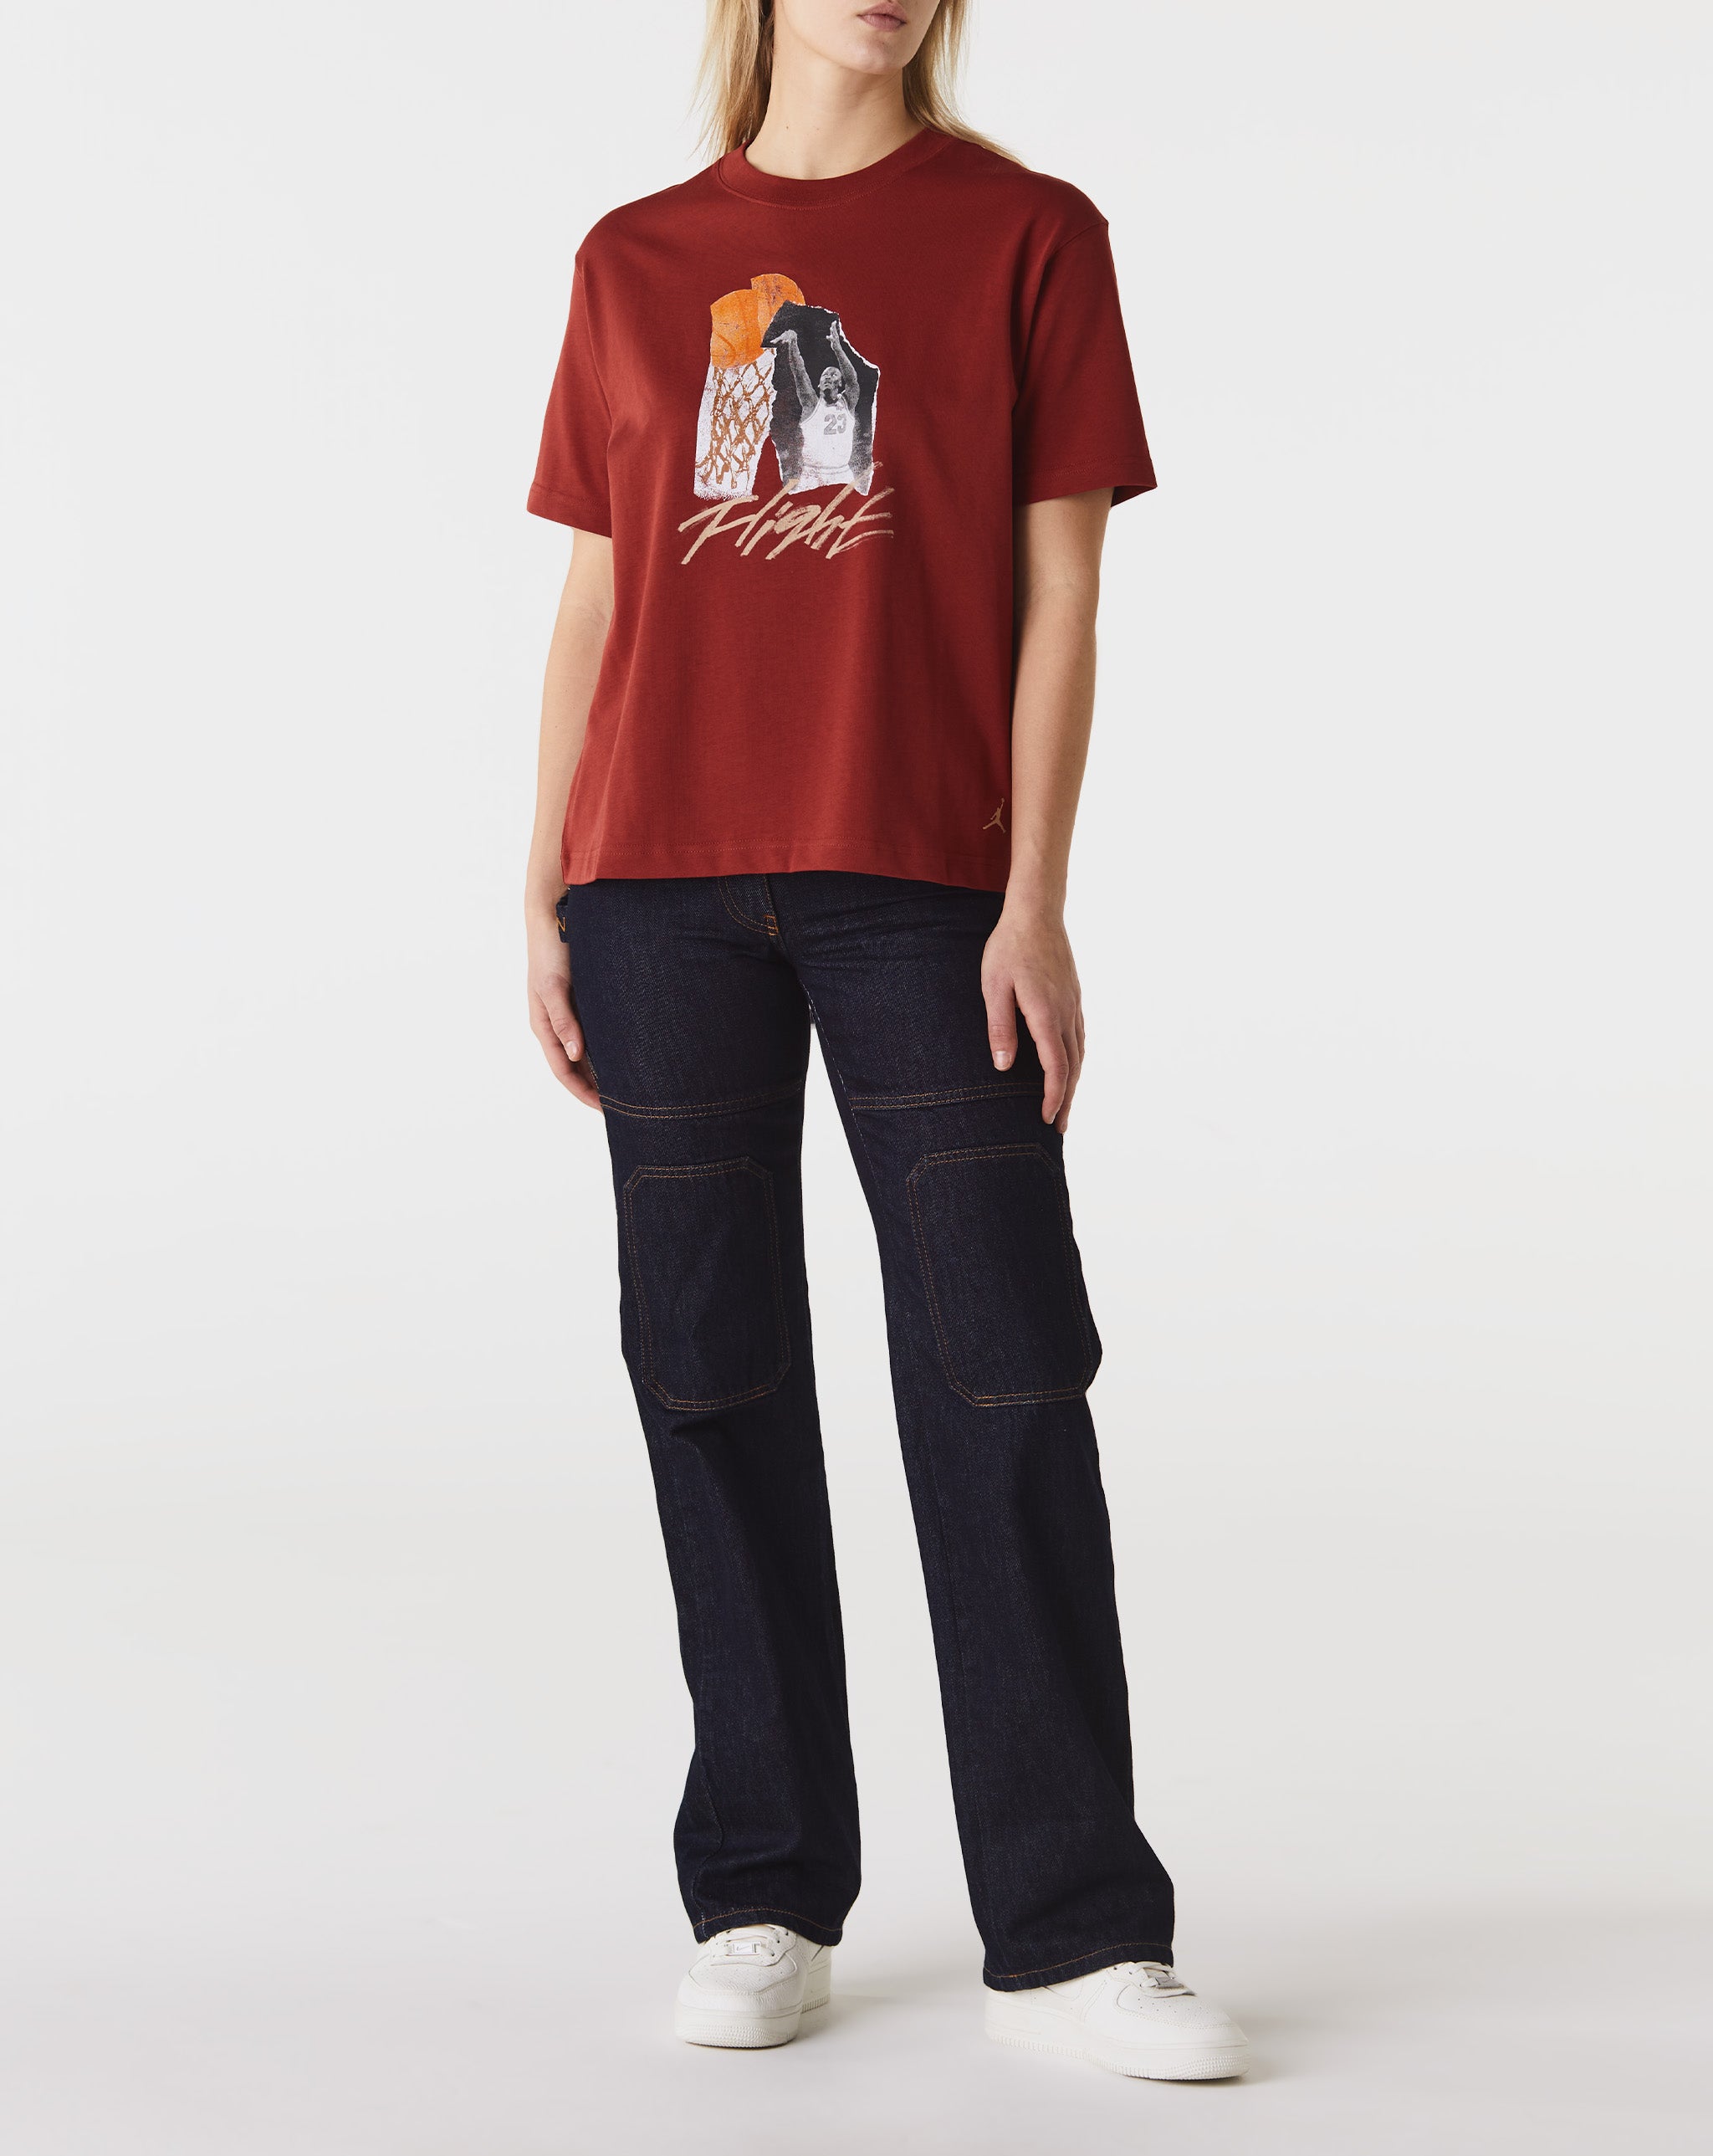 Air Jordan Women's Collage Girlfriend T-Shirt  - Cheap Cerbe Jordan outlet